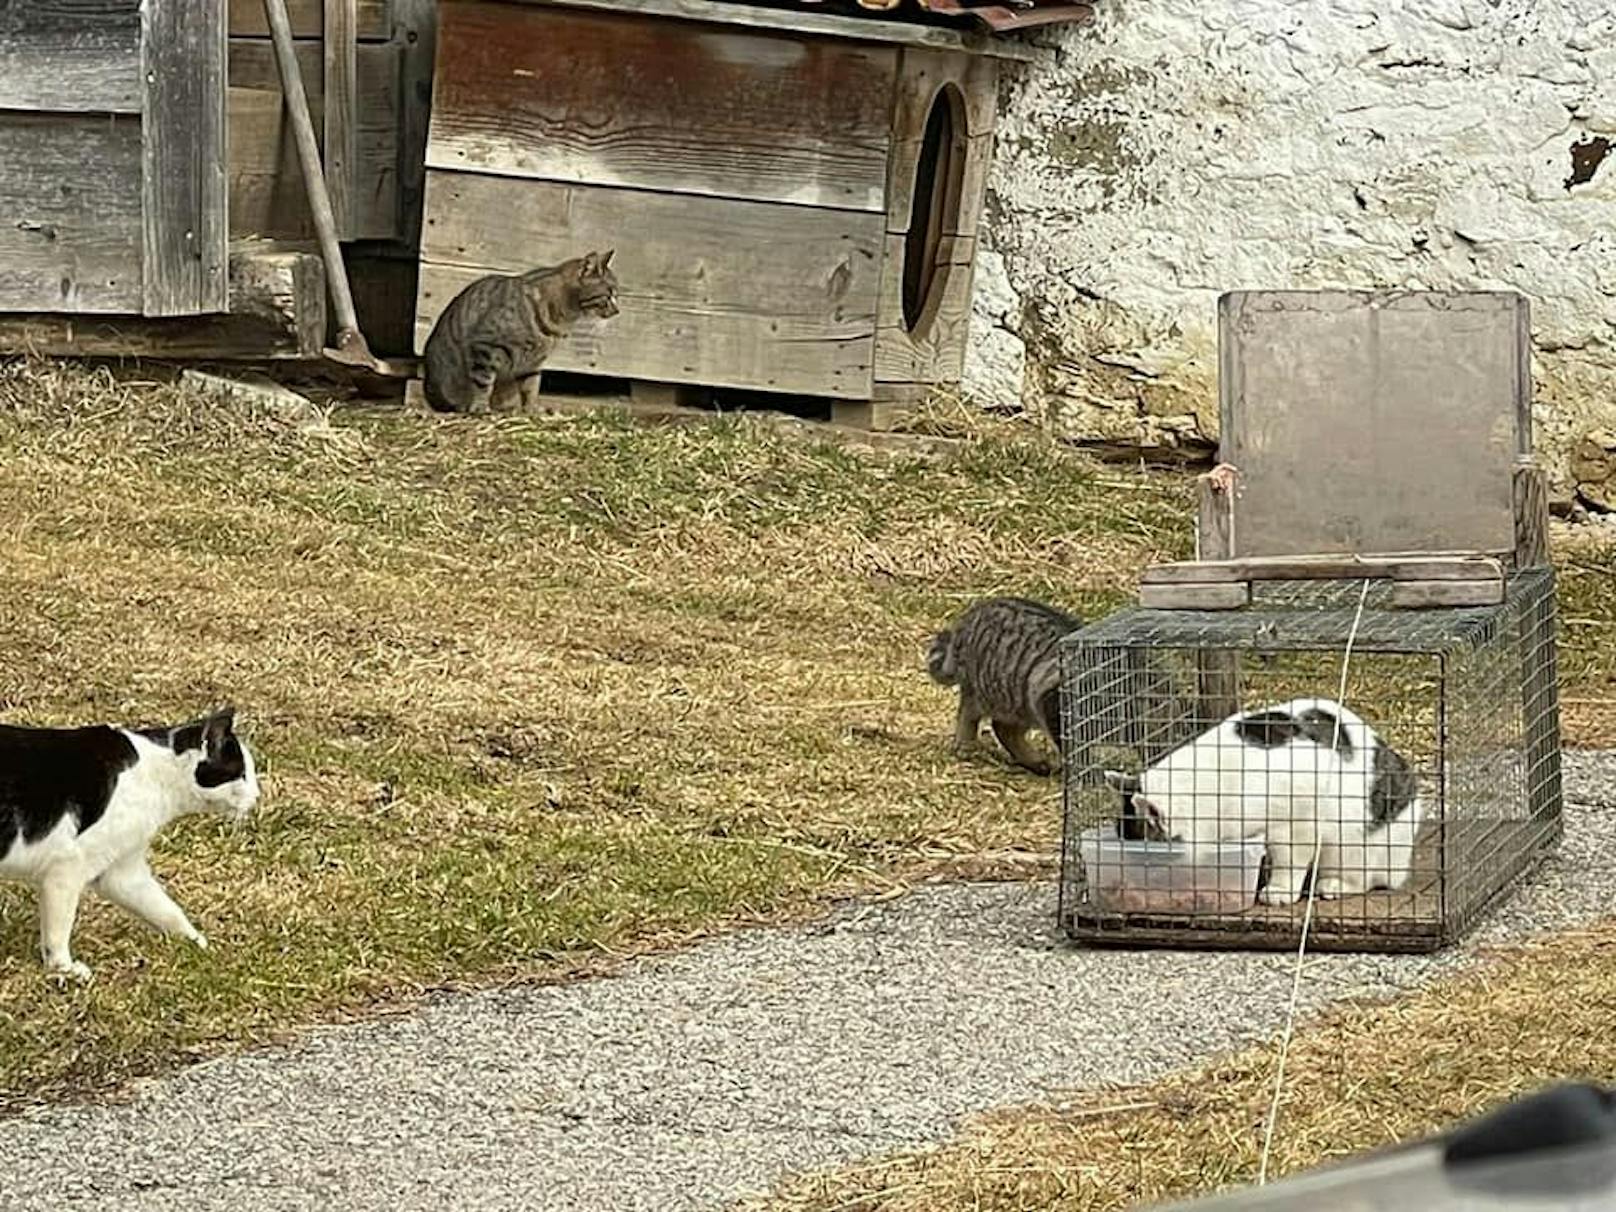 Ein grausamer Fall in Kärnten machte uns alle sprachlos: Eine Frau ernährte ihren Hund jahrelang mit den Babys von Streunerkatzen. ---&gt; <a href="https://www.heute.at/s/kaernten-hund-wurde-jahrelang-mit-katzenbabys-ernaehrt-100132883">ARTIKEL</a> <br>